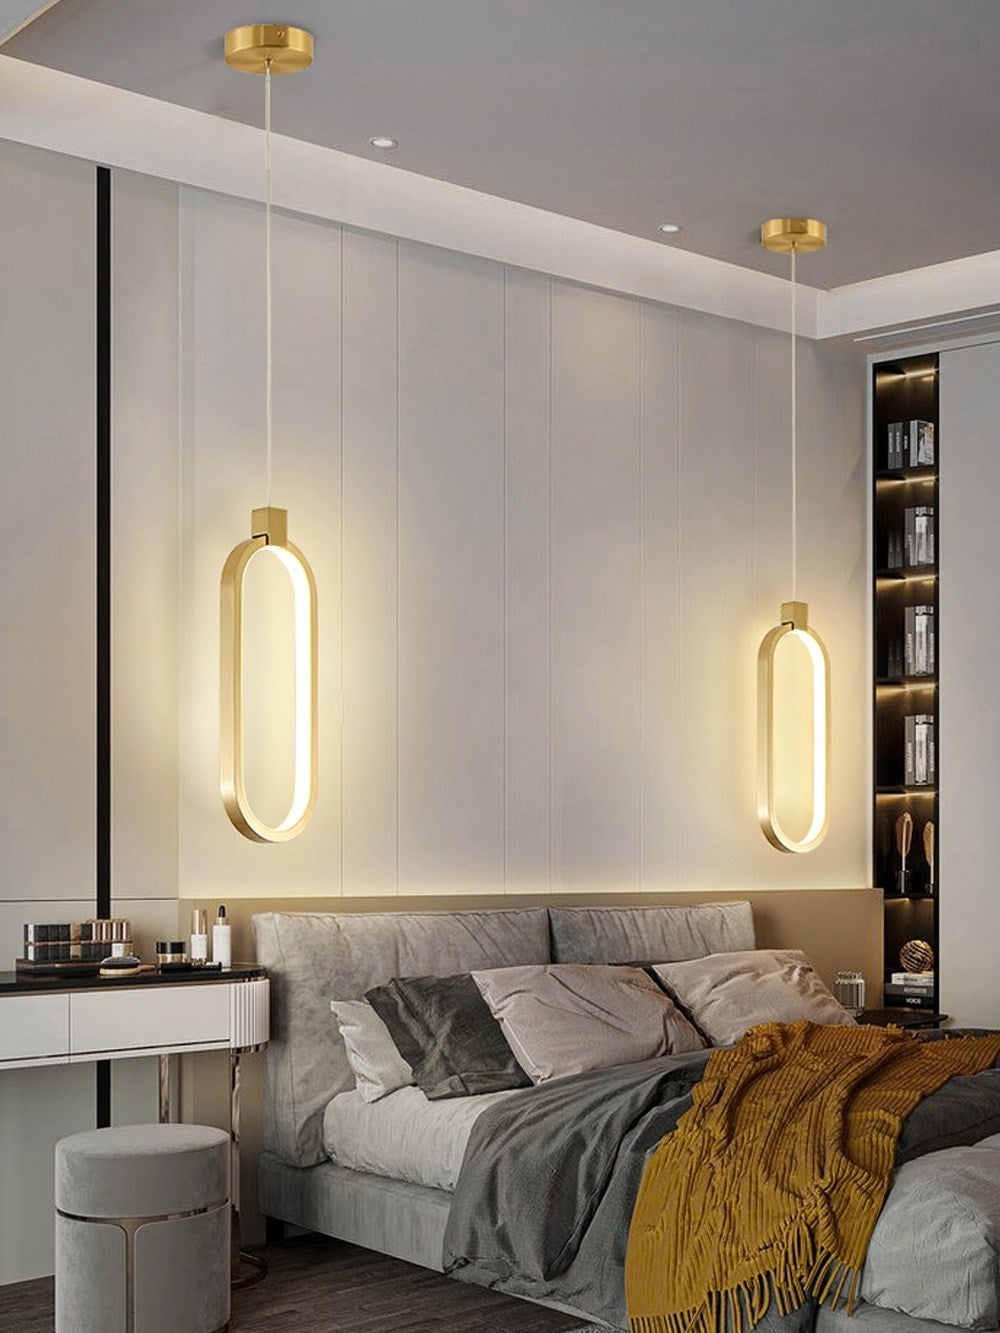 An elegant Luminance LED Pendant Light illuminating a stylish room decor.